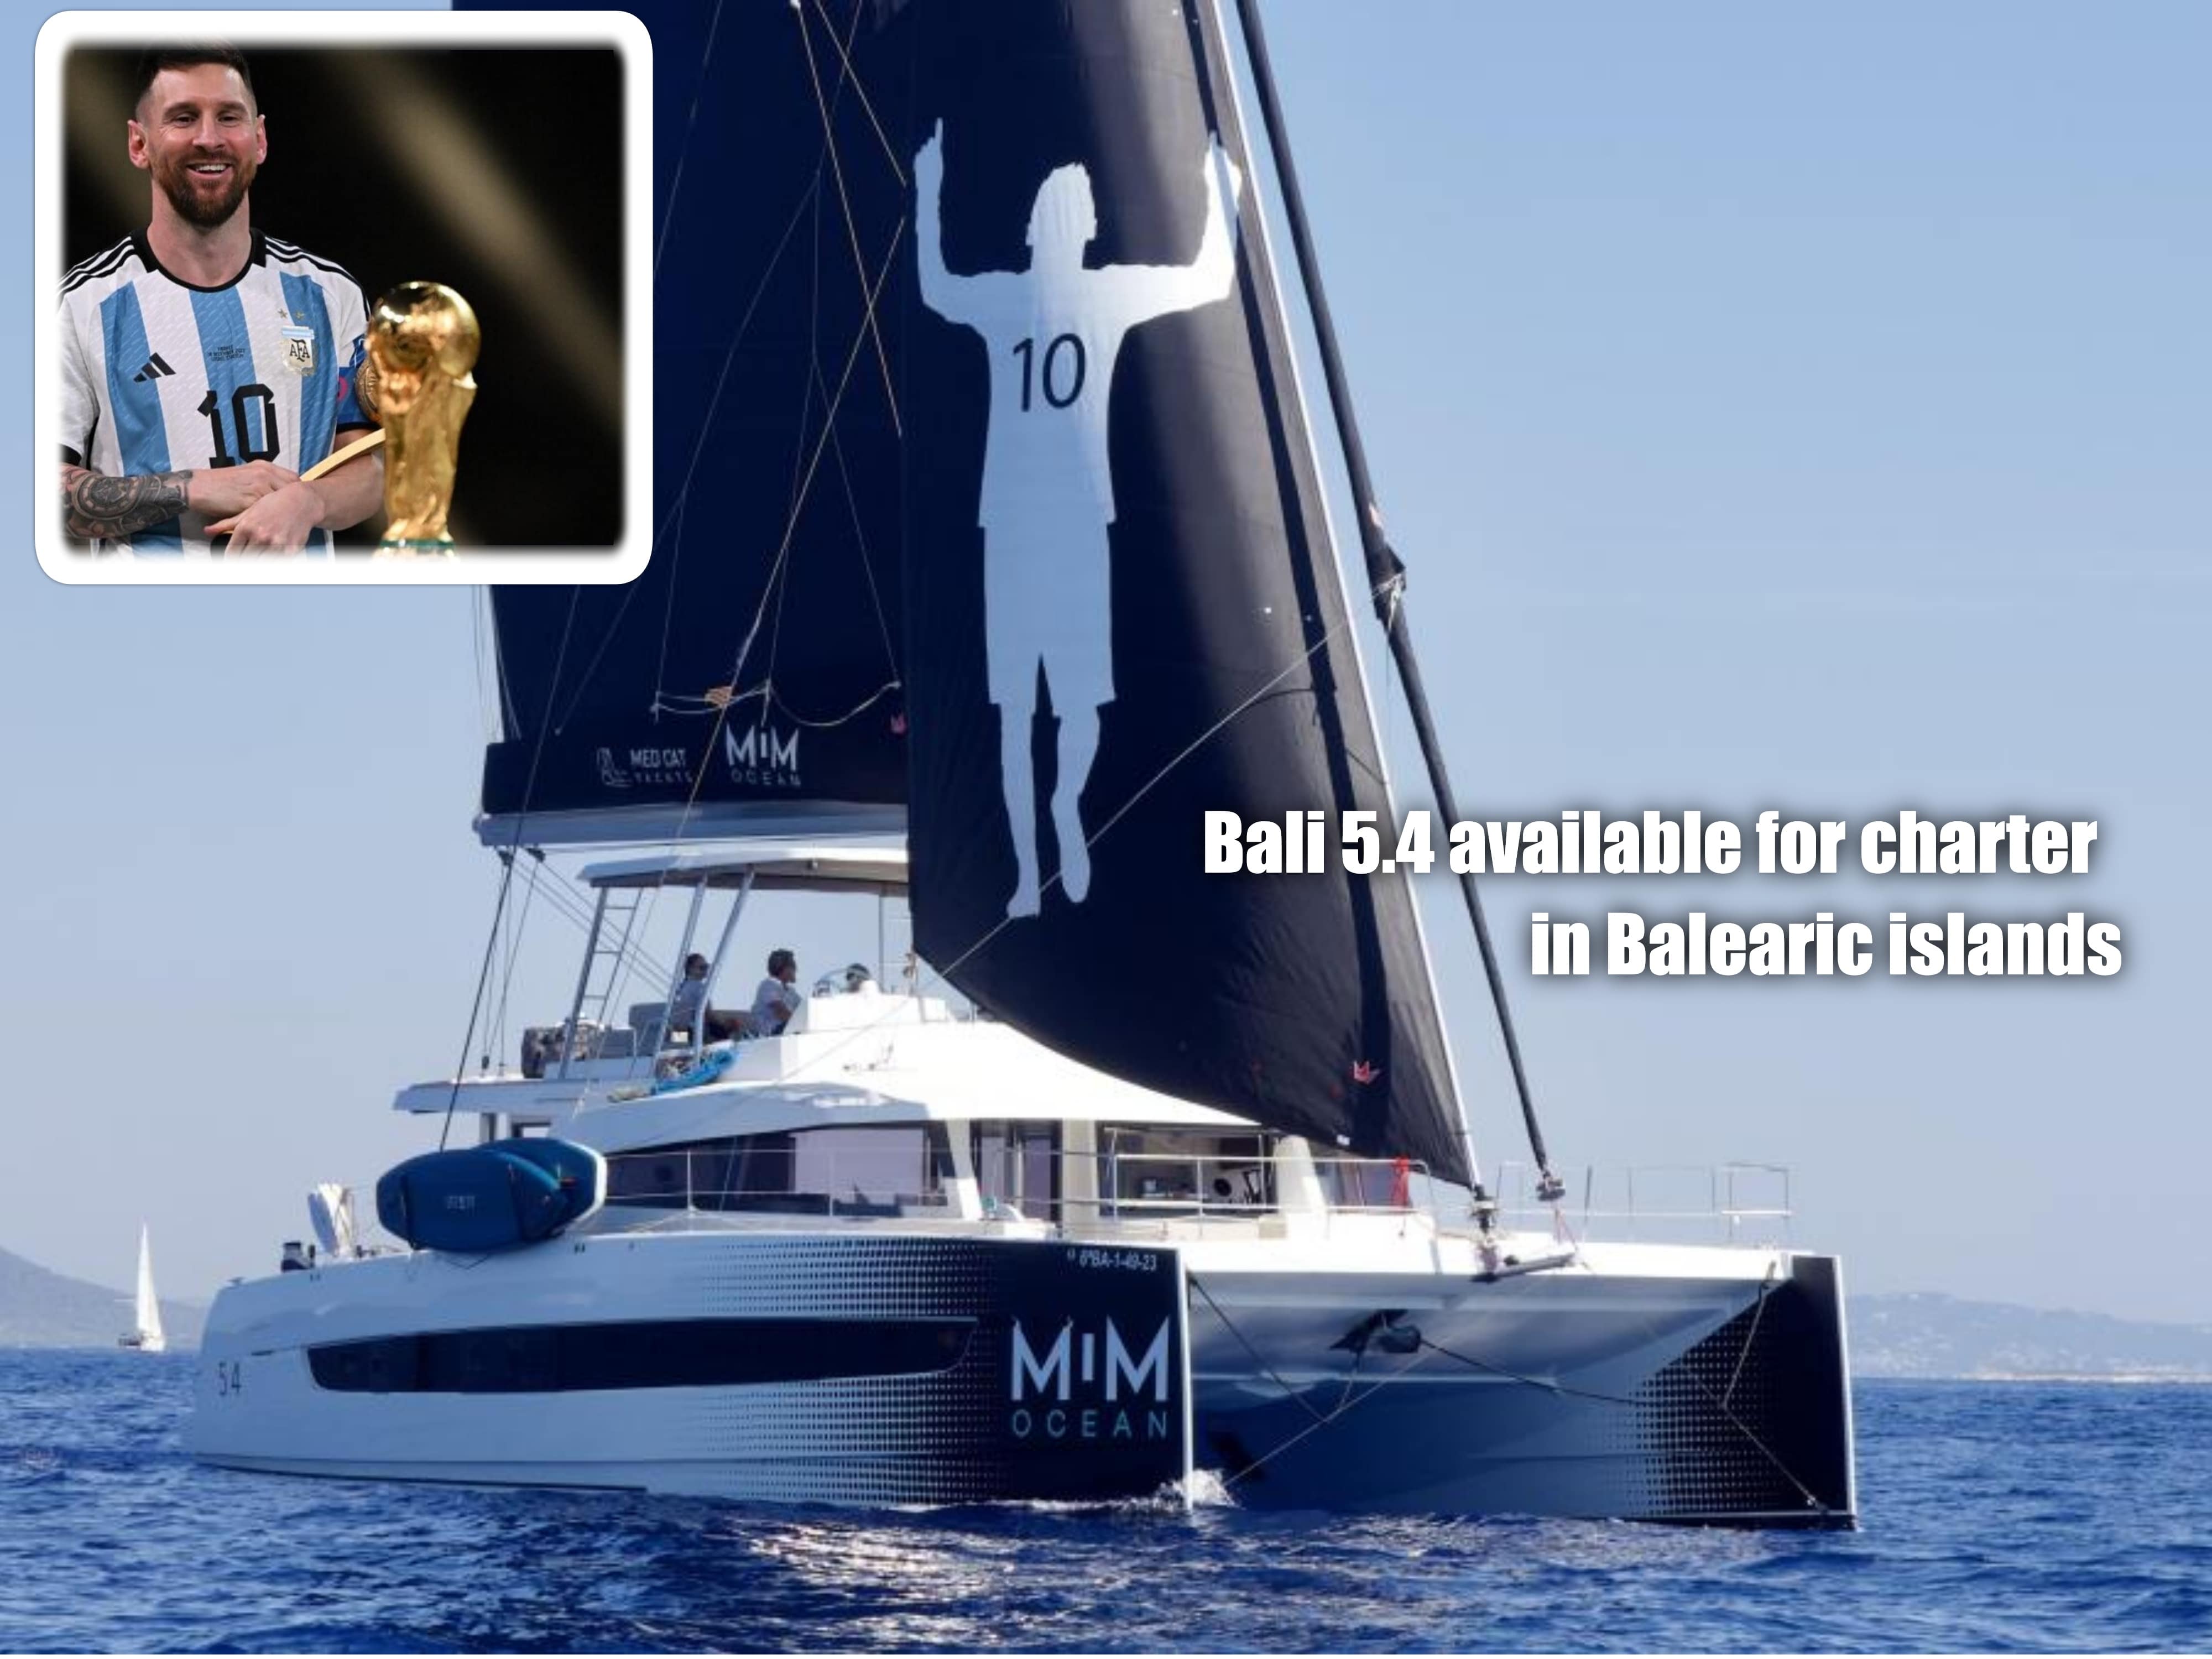 Messi lanza nuevo proyecto con Catamaranes Bali 5.4 en Baleares